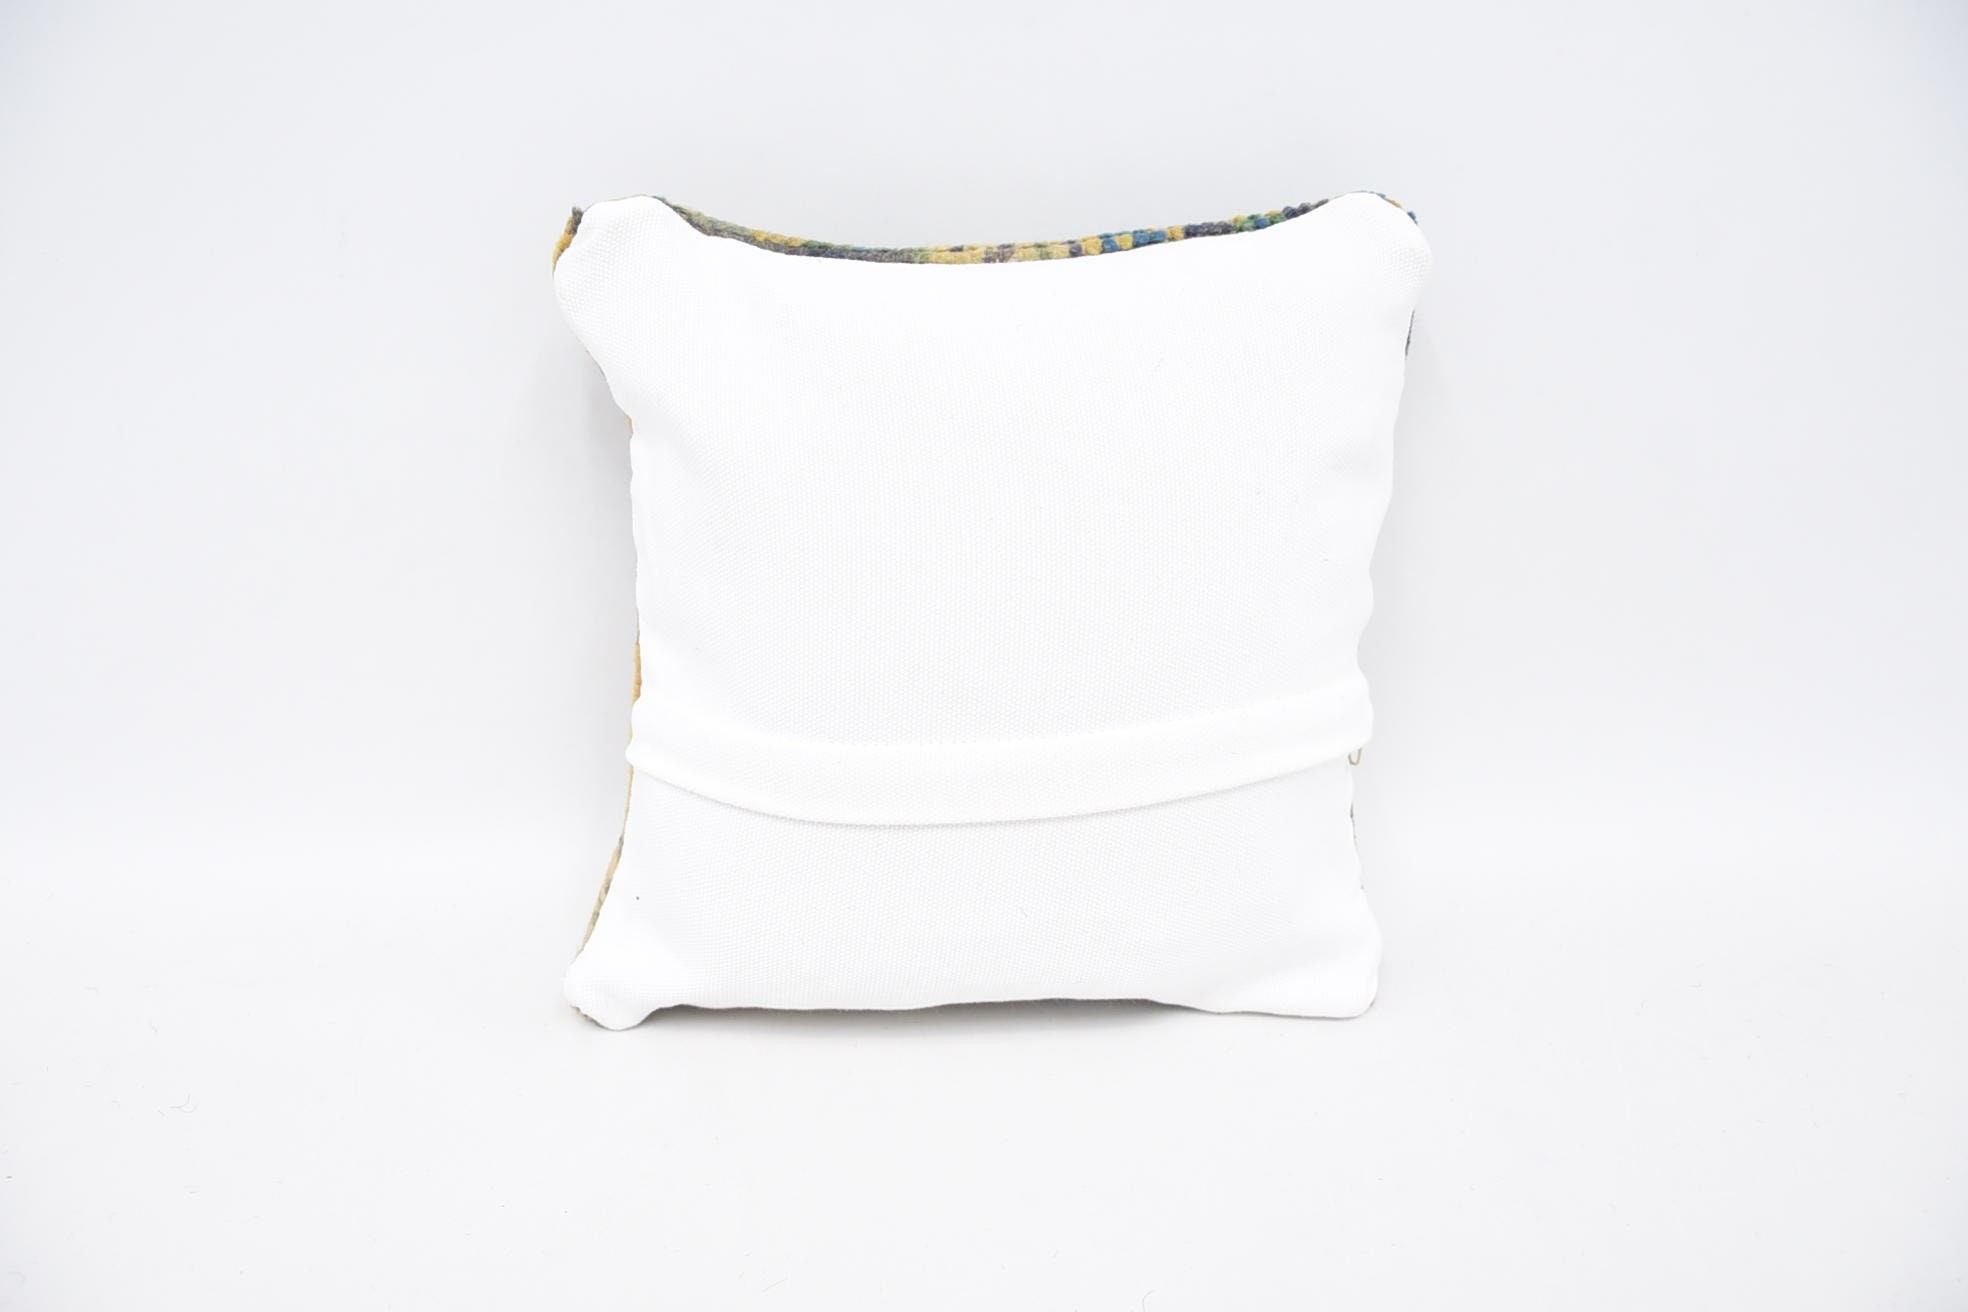 Kilim Pillow, Antique Pillows, 12"x12" Orange Pillow Case, Retro Throw Cushion Cover, Yoga Pillow Cover, Vintage Kilim Pillow